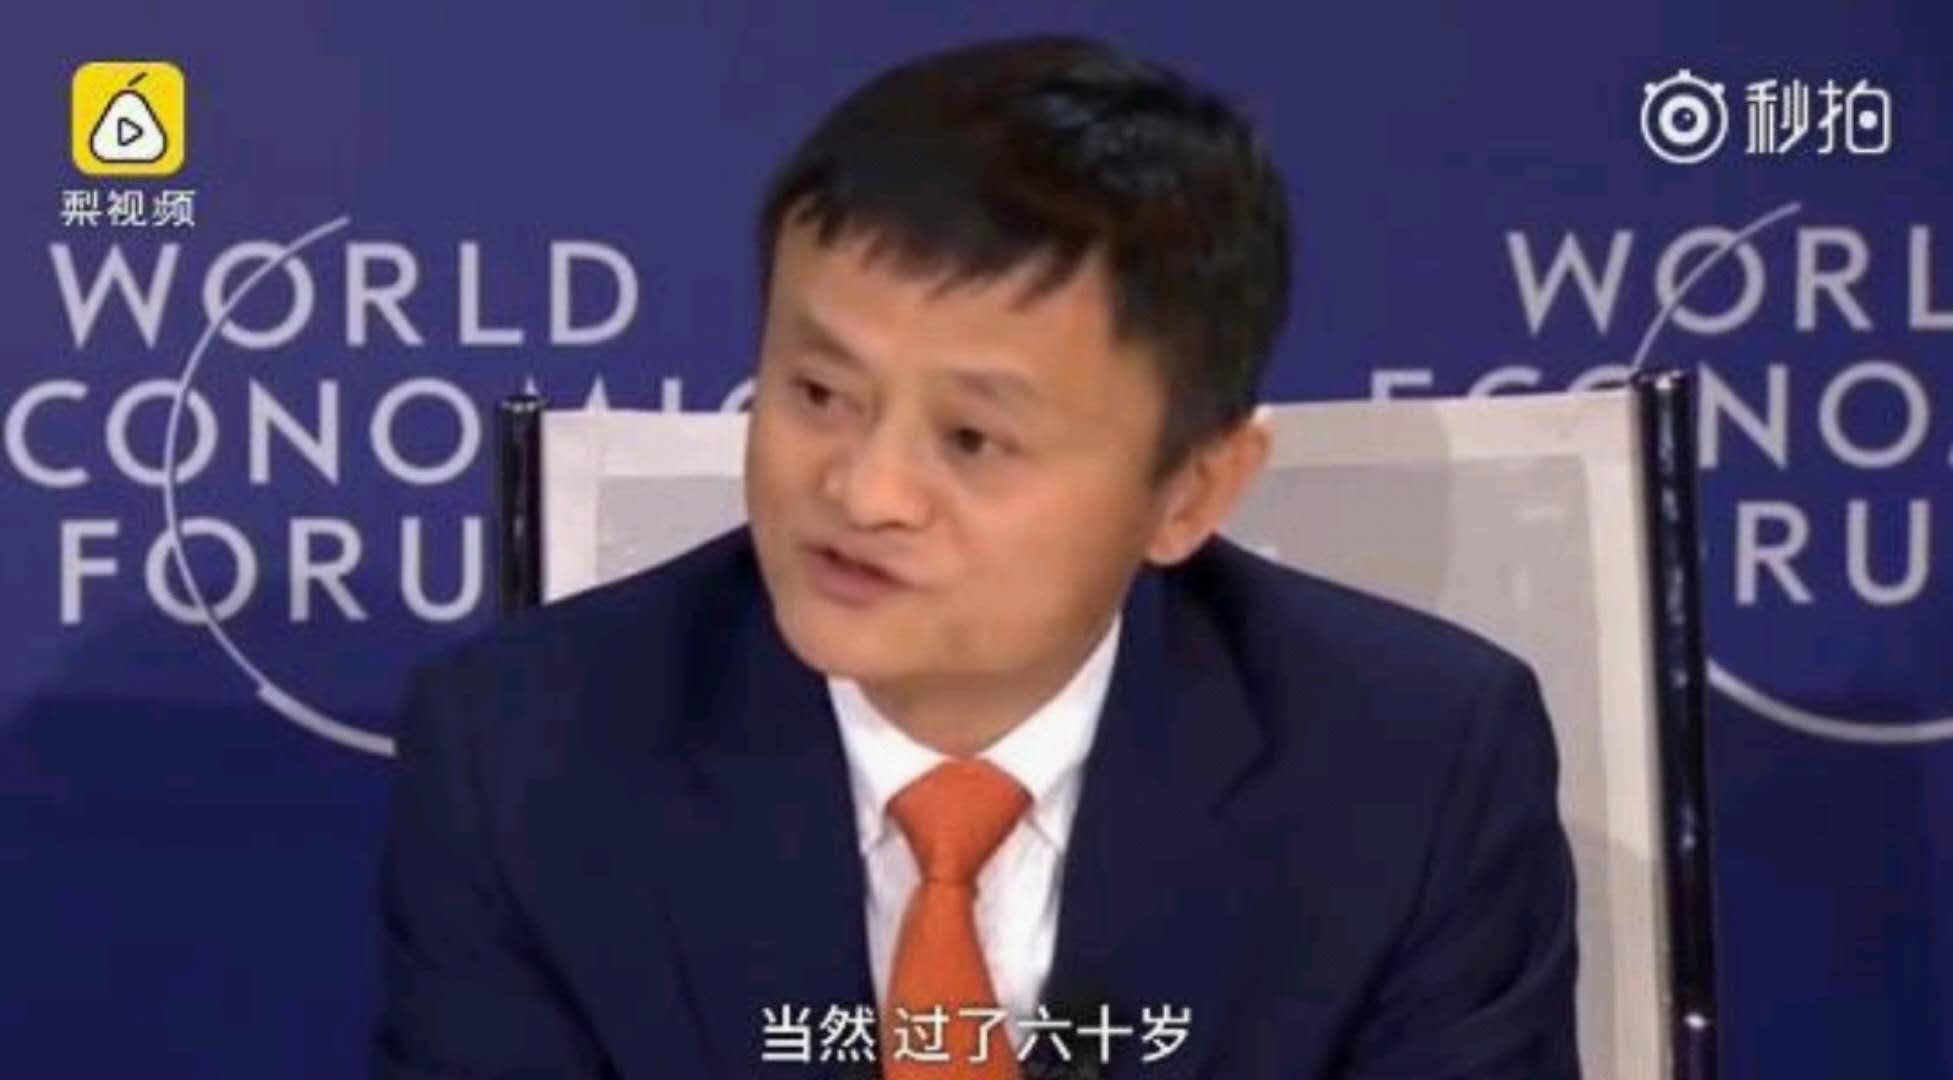 刘强东在达沃斯上表示京东要做全球最大的电商 | 京东 能 VS 不能 成为全球最大电商？